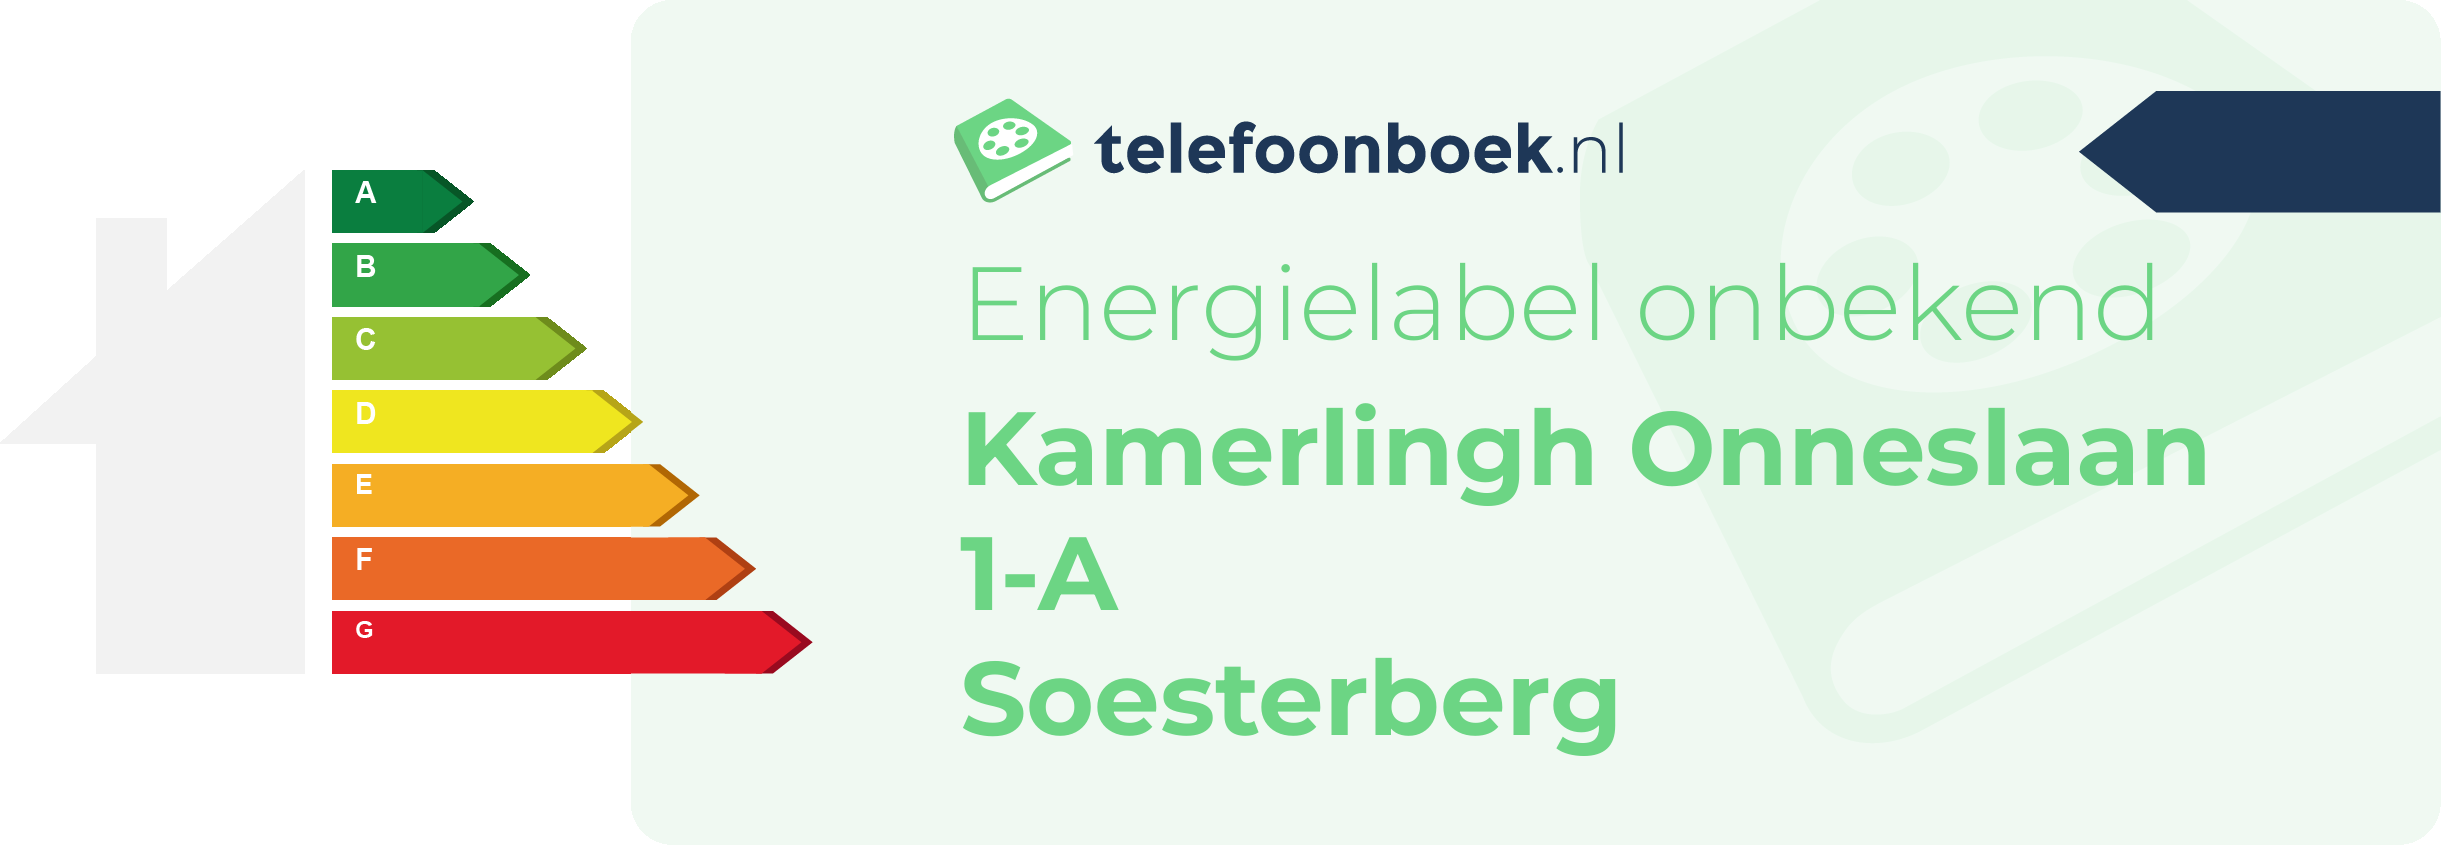 Energielabel Kamerlingh Onneslaan 1-A Soesterberg